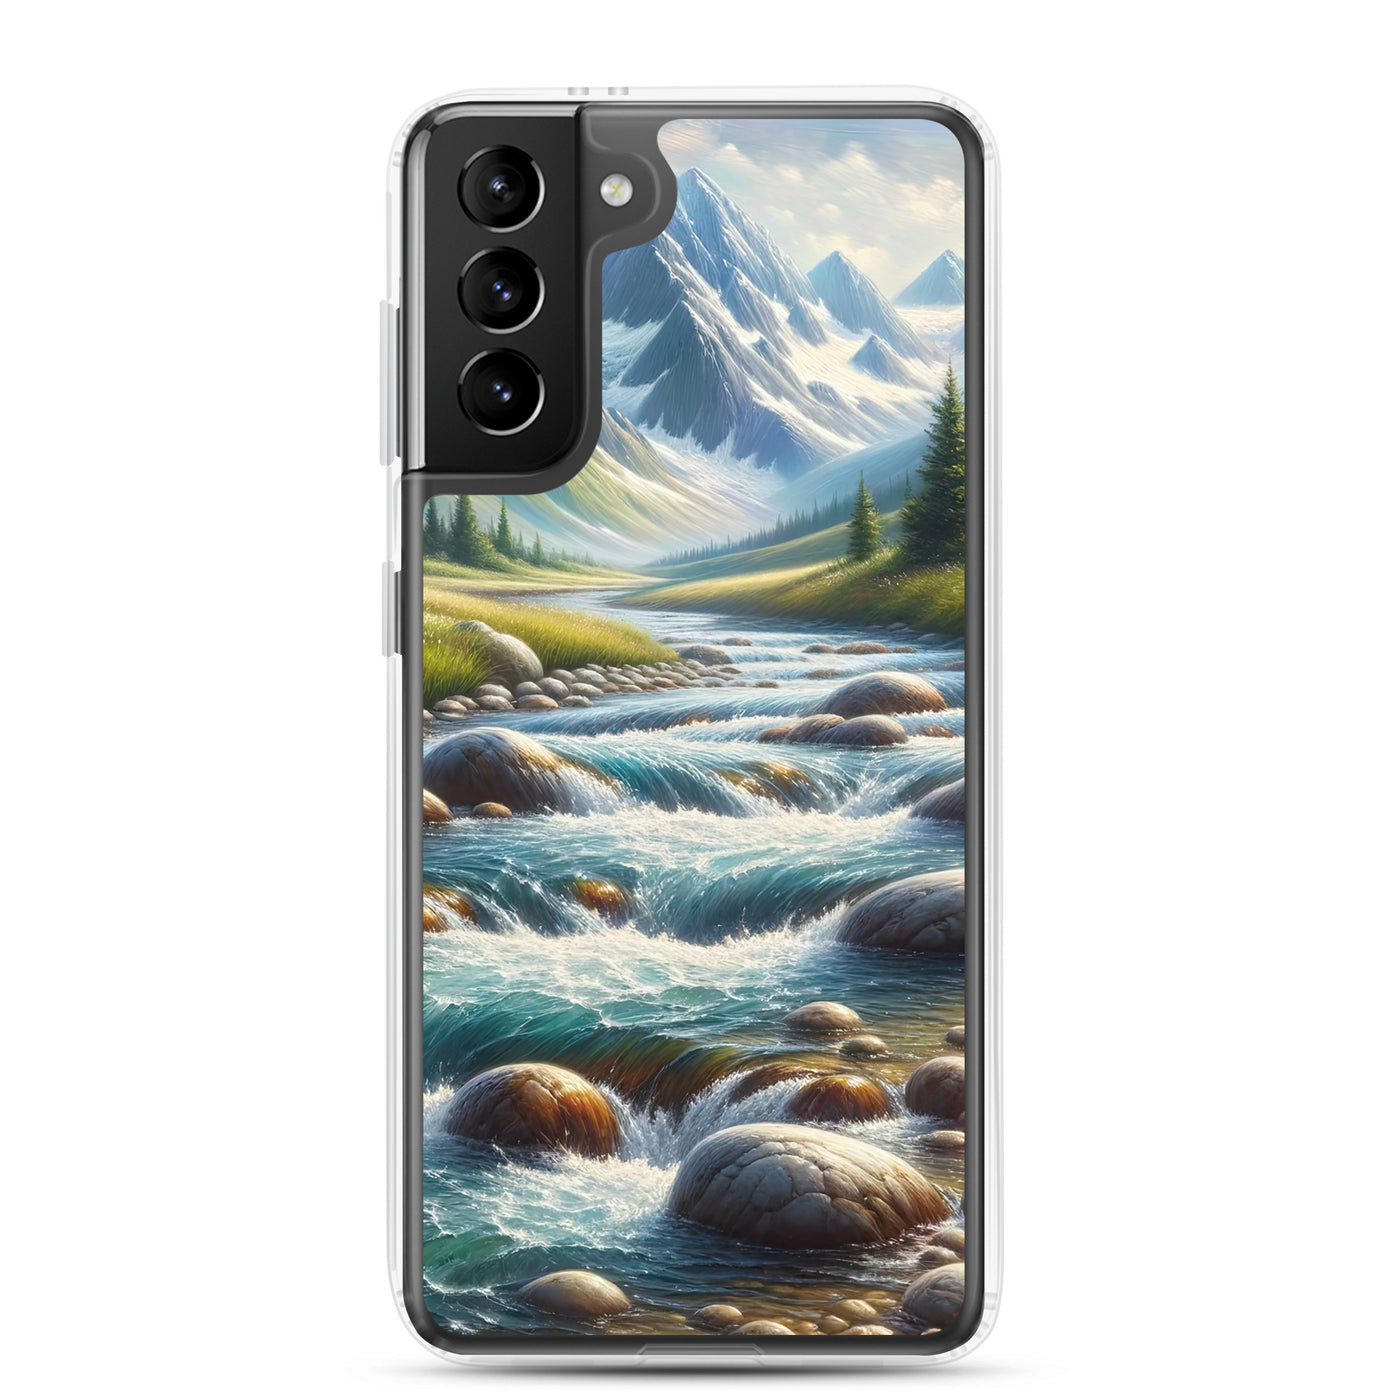 Ölgemälde eines Gebirgsbachs durch felsige Landschaft - Samsung Schutzhülle (durchsichtig) berge xxx yyy zzz Samsung Galaxy S21 Plus